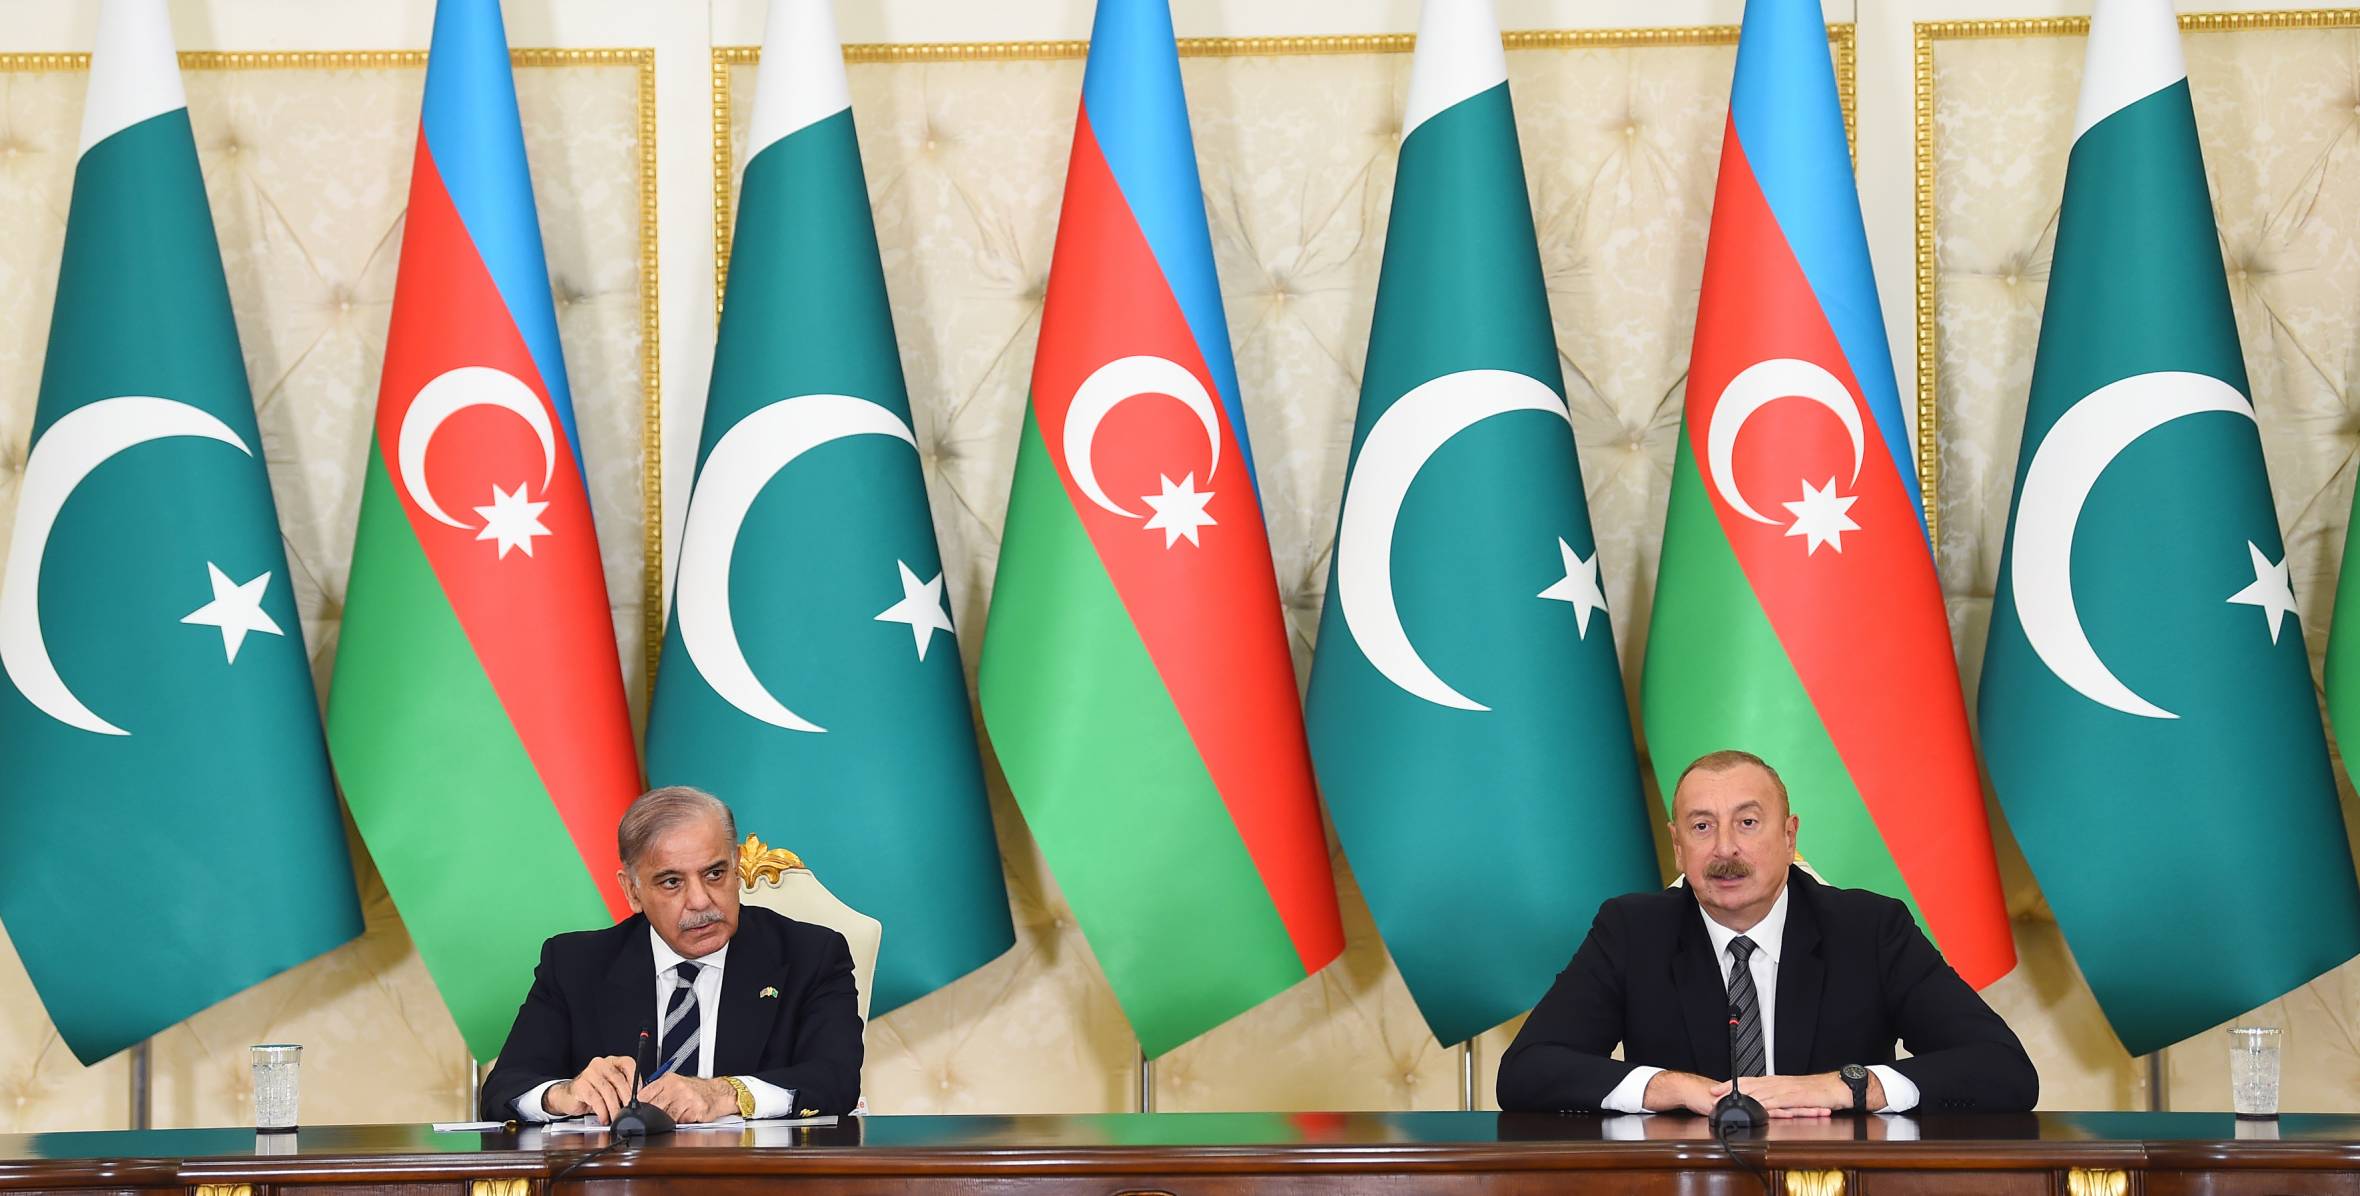 Ильхам Алиев и премьер-министр Пакистана Мухаммад Шахбаз Шариф выступили с заявлениями для прессы